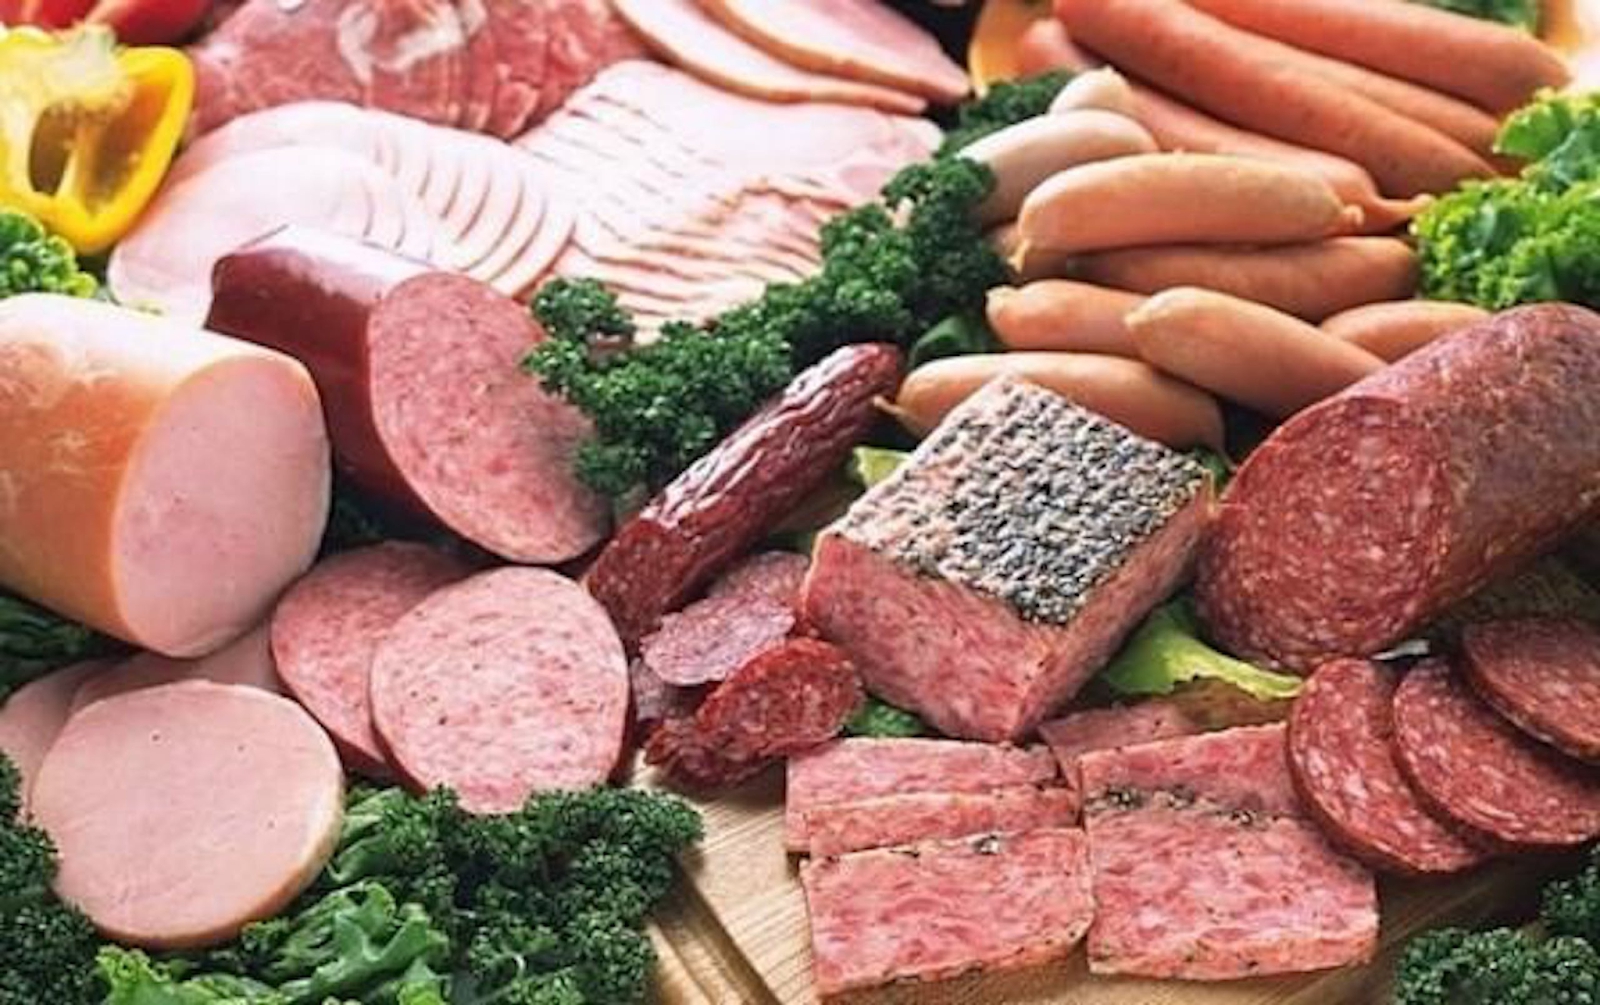 WHO kêu gọi hãy ngừng ăn hoặc hạn chế 6 loại thịt nếu không muốn tự rước bệnh ung thư vào người - Ảnh 4.